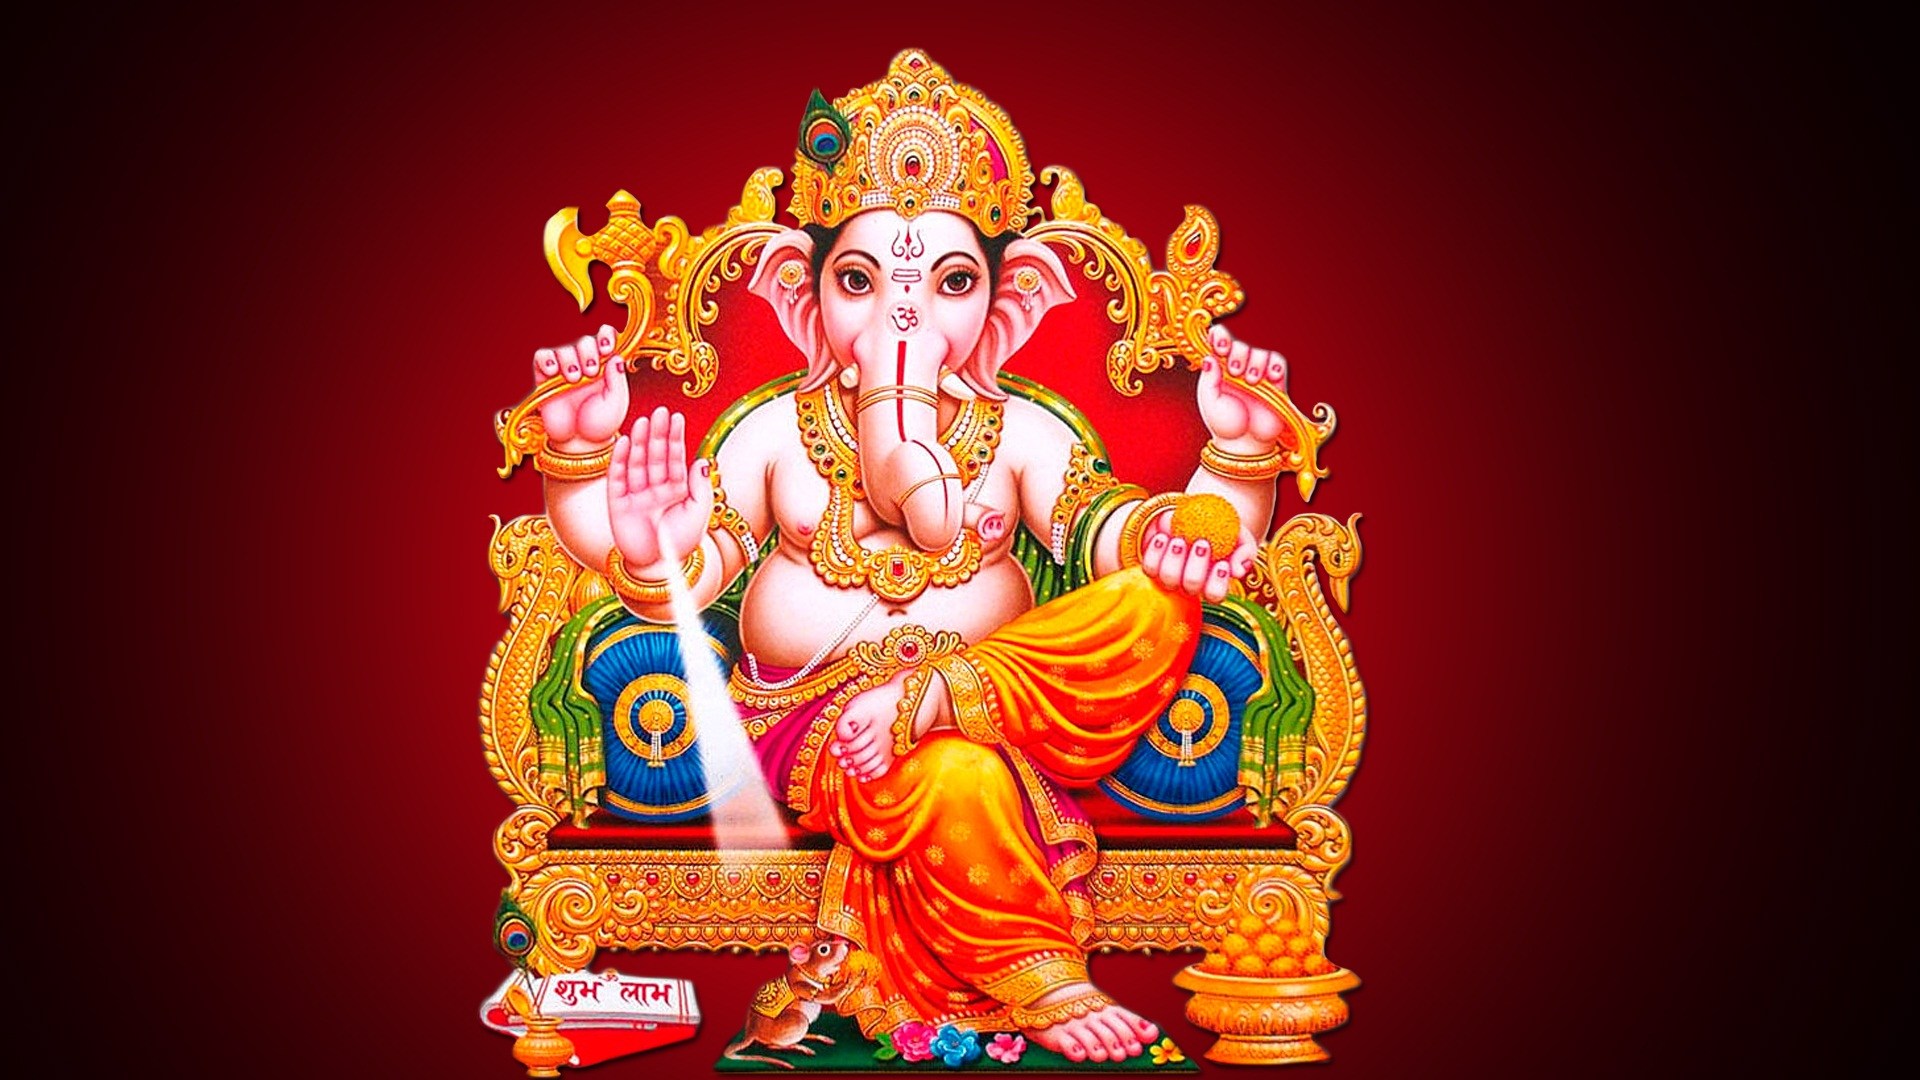 Ganesha Images Lord Ganehsha Wallpapers Lord Ganesha Images Download Vinayagar Photos Hd Wallpapers